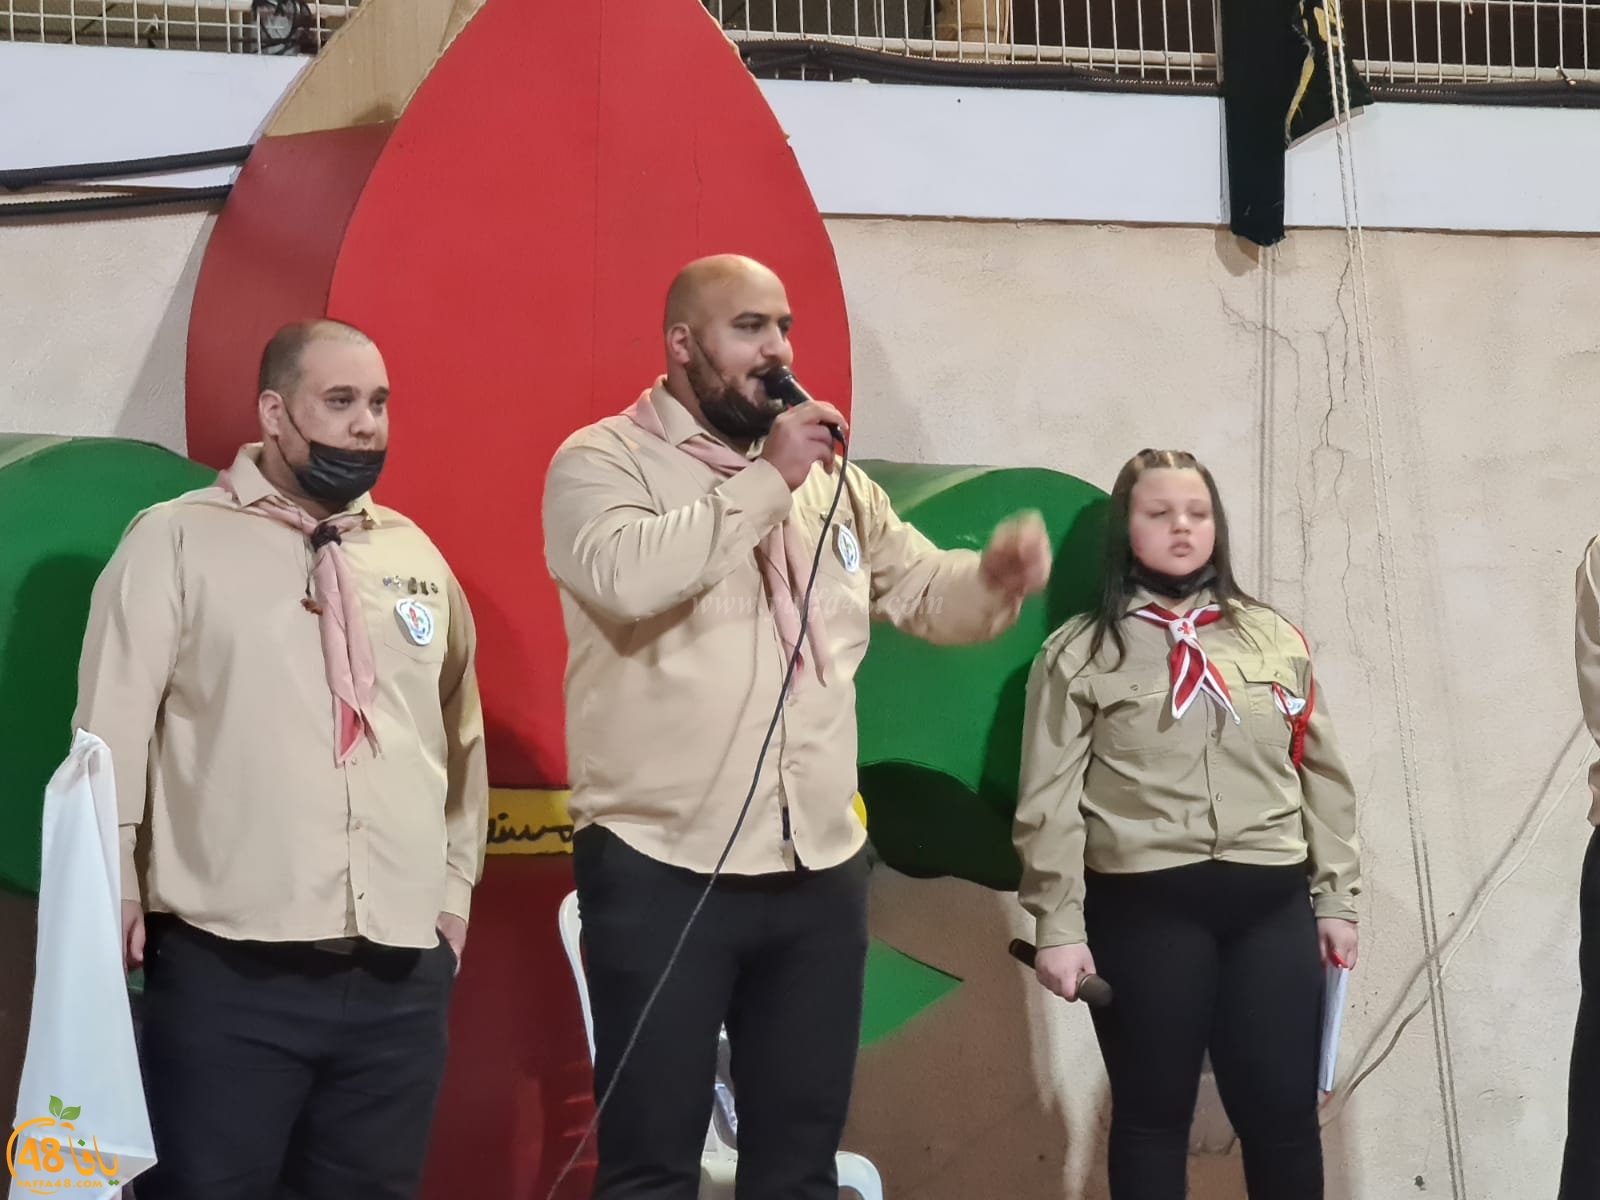  فيديو: الاحتفال بتدشين أعضاء ومرشدين جدد لسرية كشاف النادي الاسلامي بيافا 